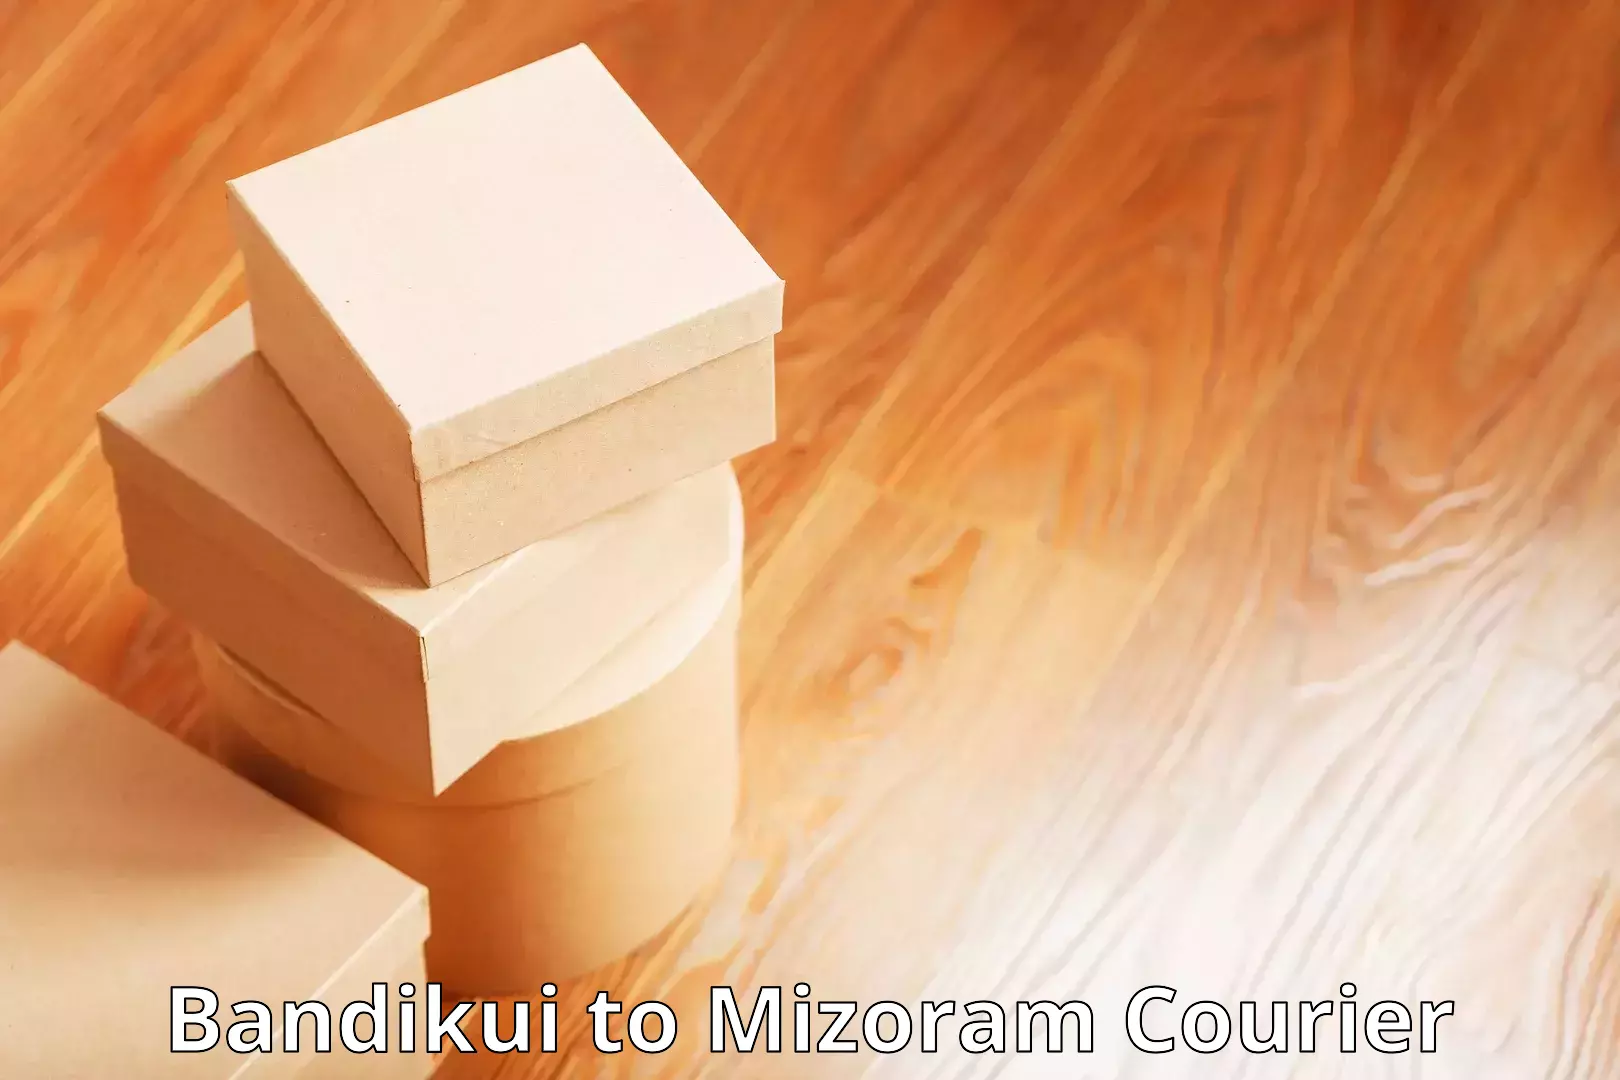 Express package handling Bandikui to Mizoram